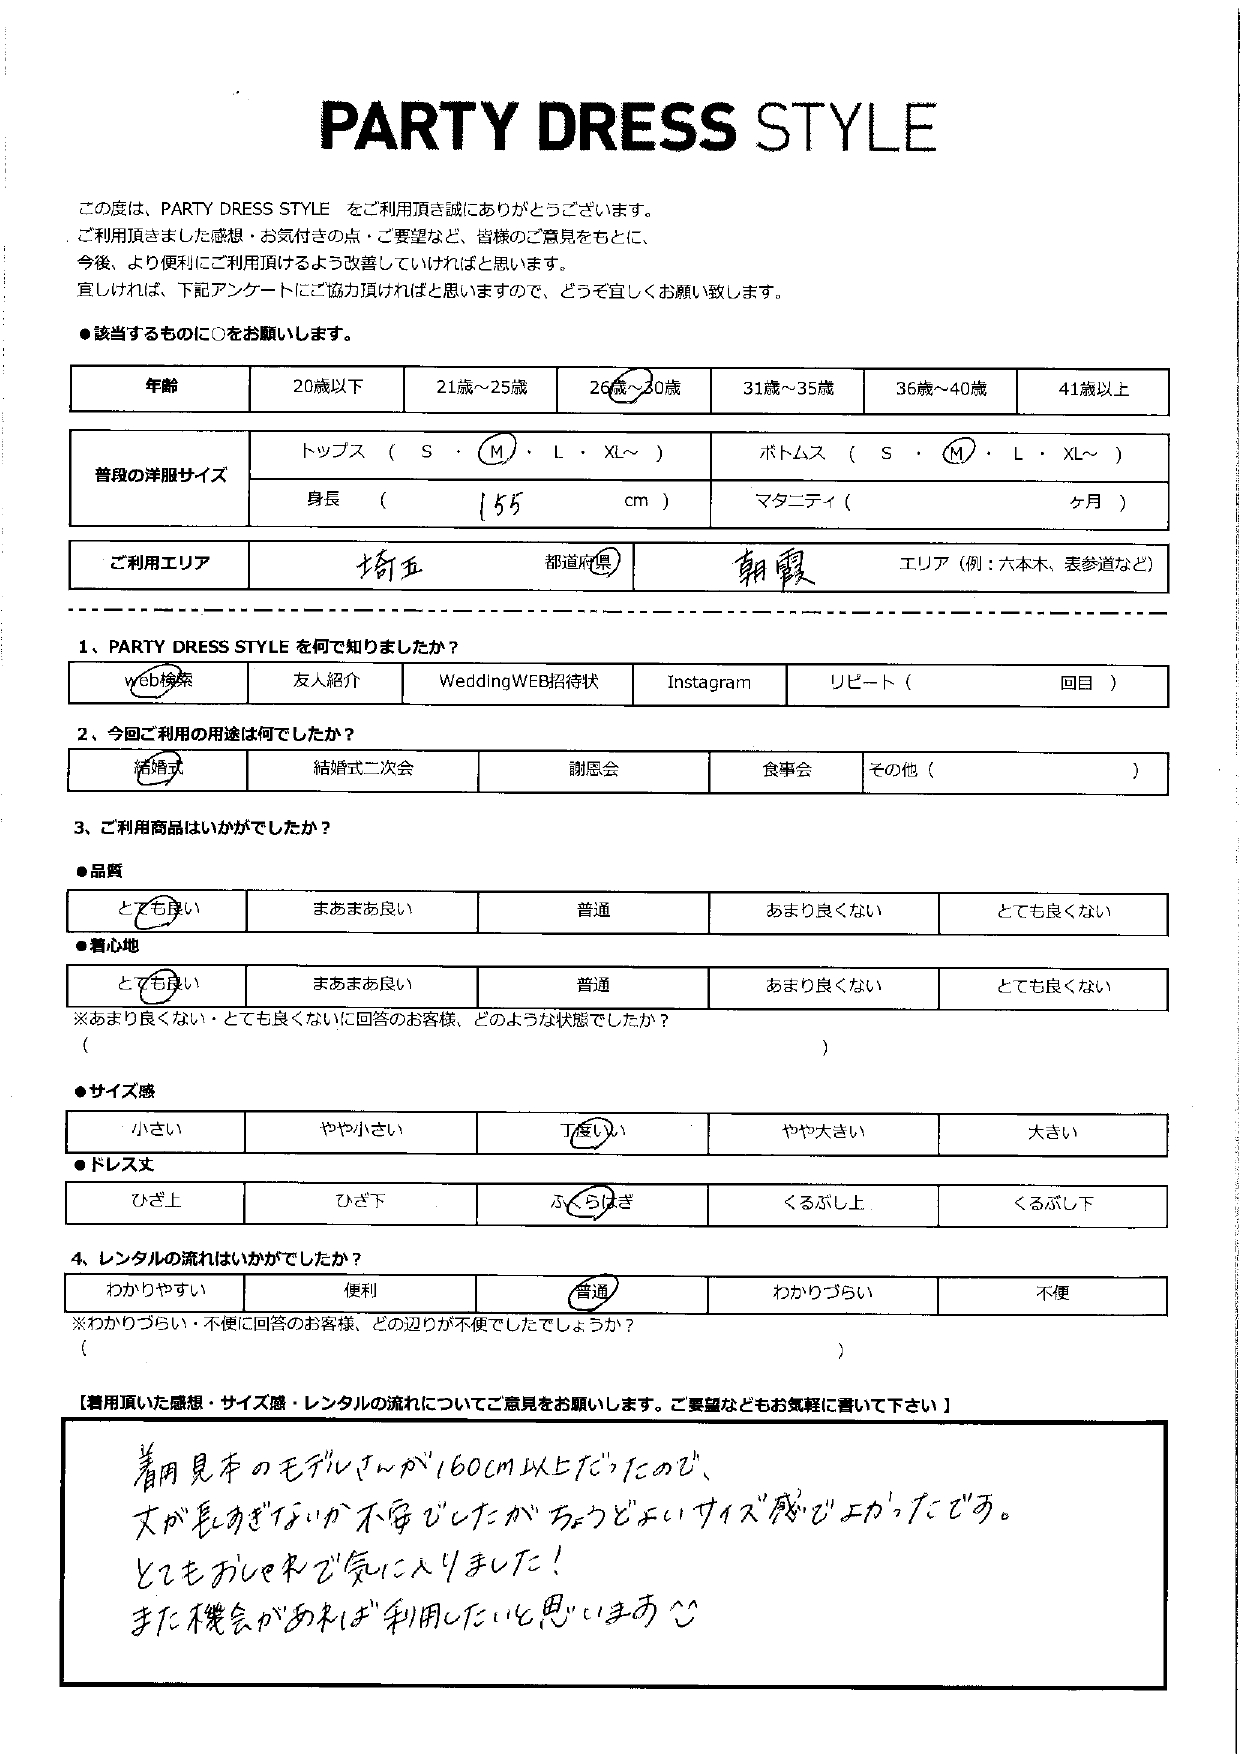 11/4 結婚式ご利用 埼玉・朝霞エリア